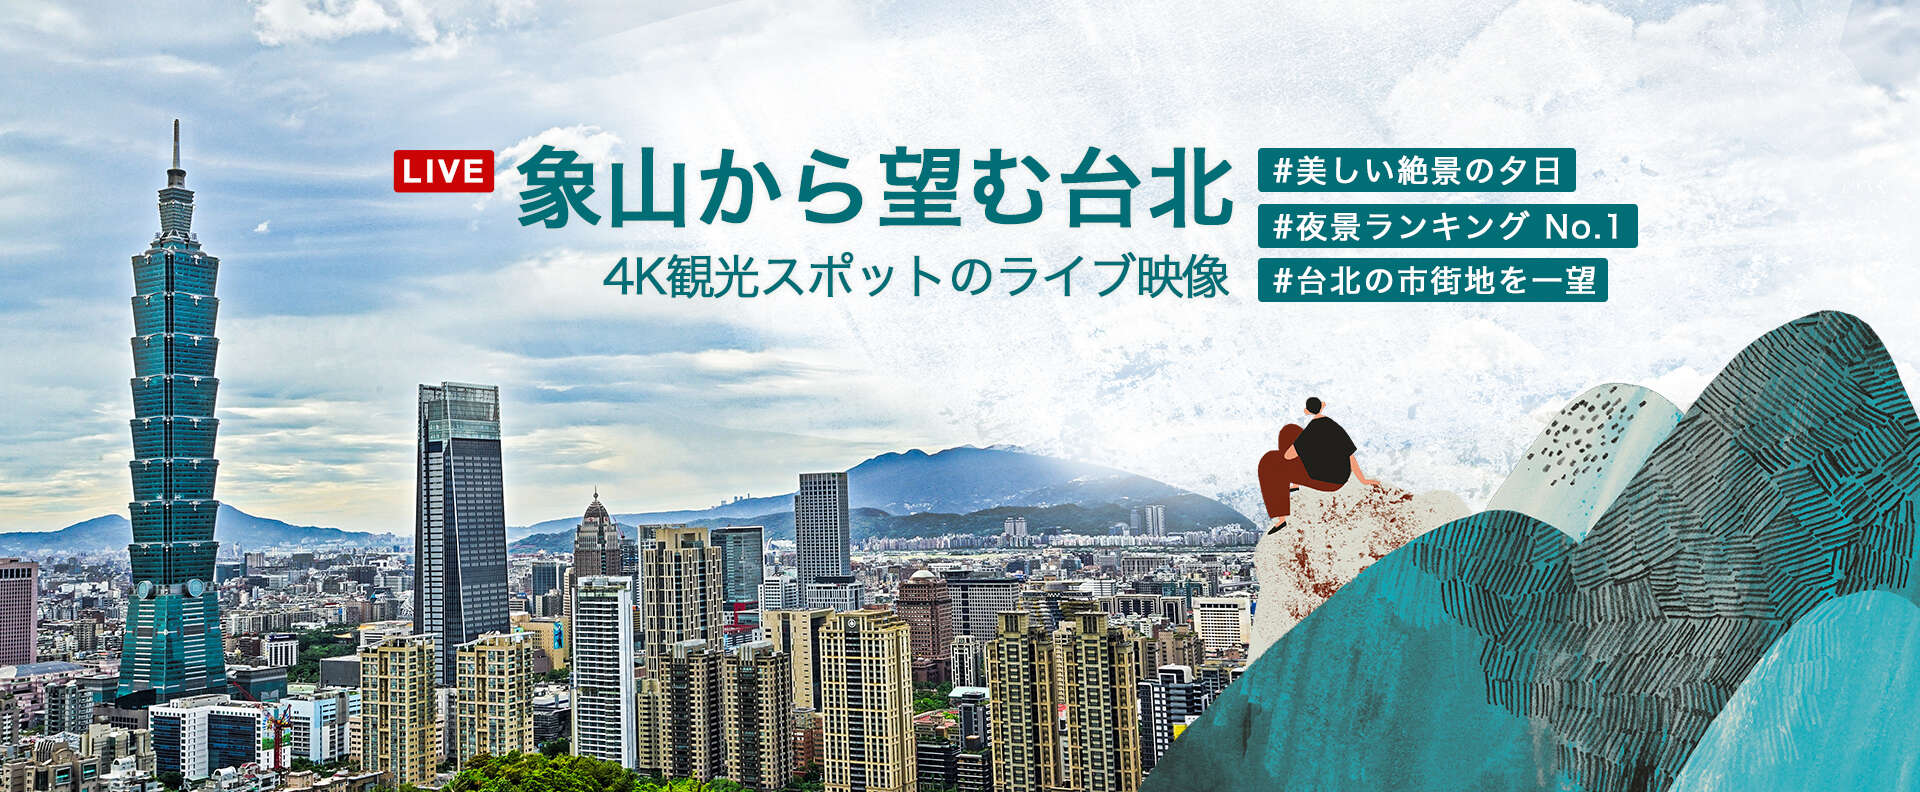 象山から望む台北 - 4K観光スポットのライブ映像